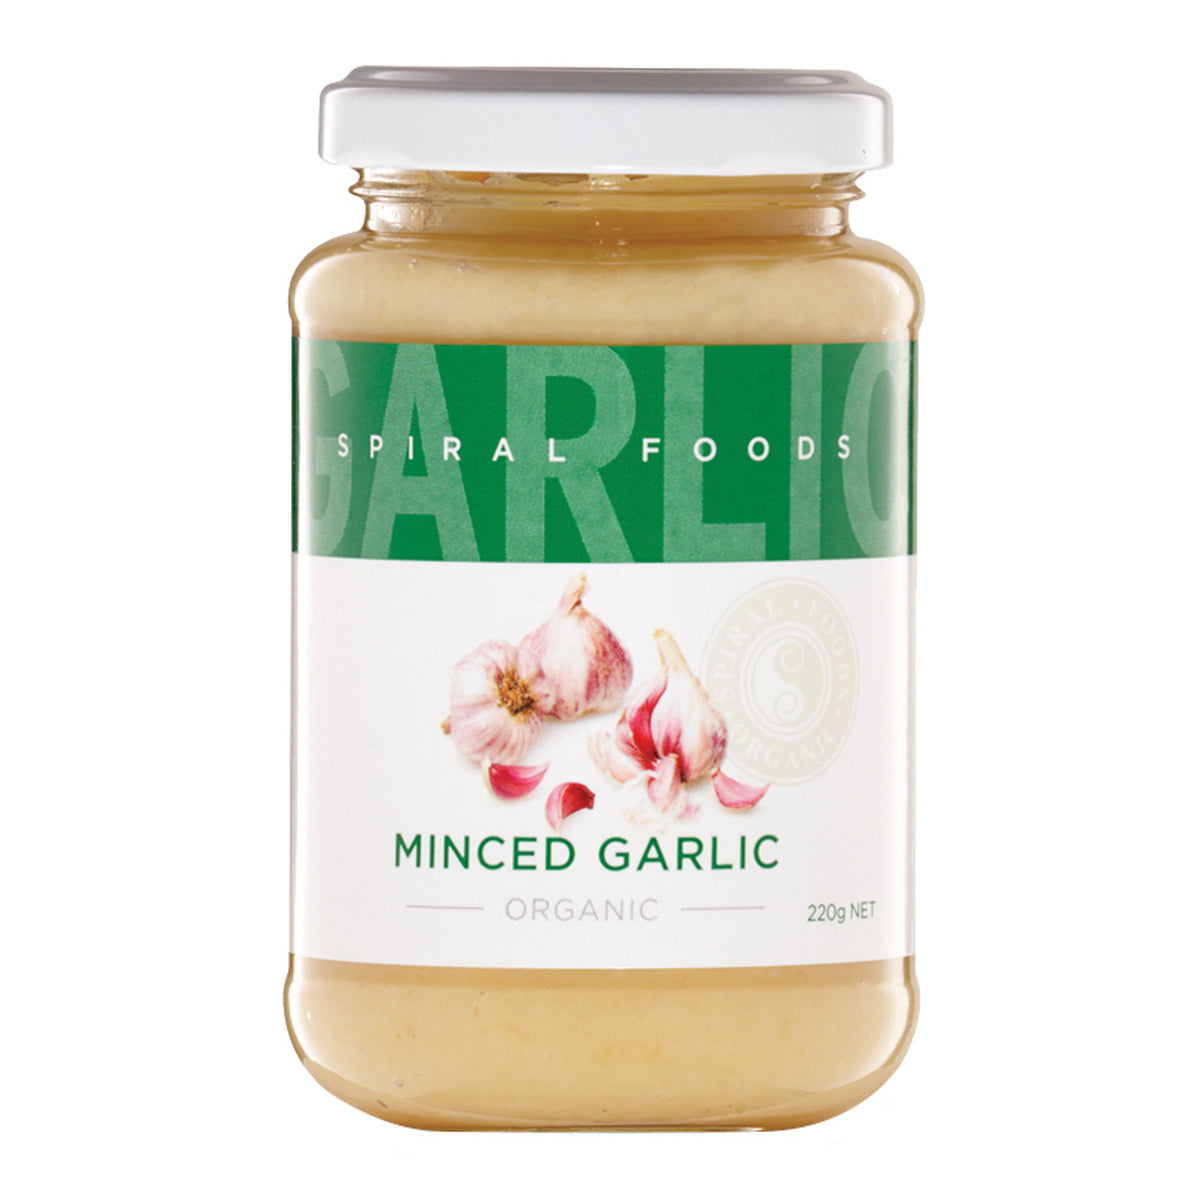 Spiral Foods Minced Garlic